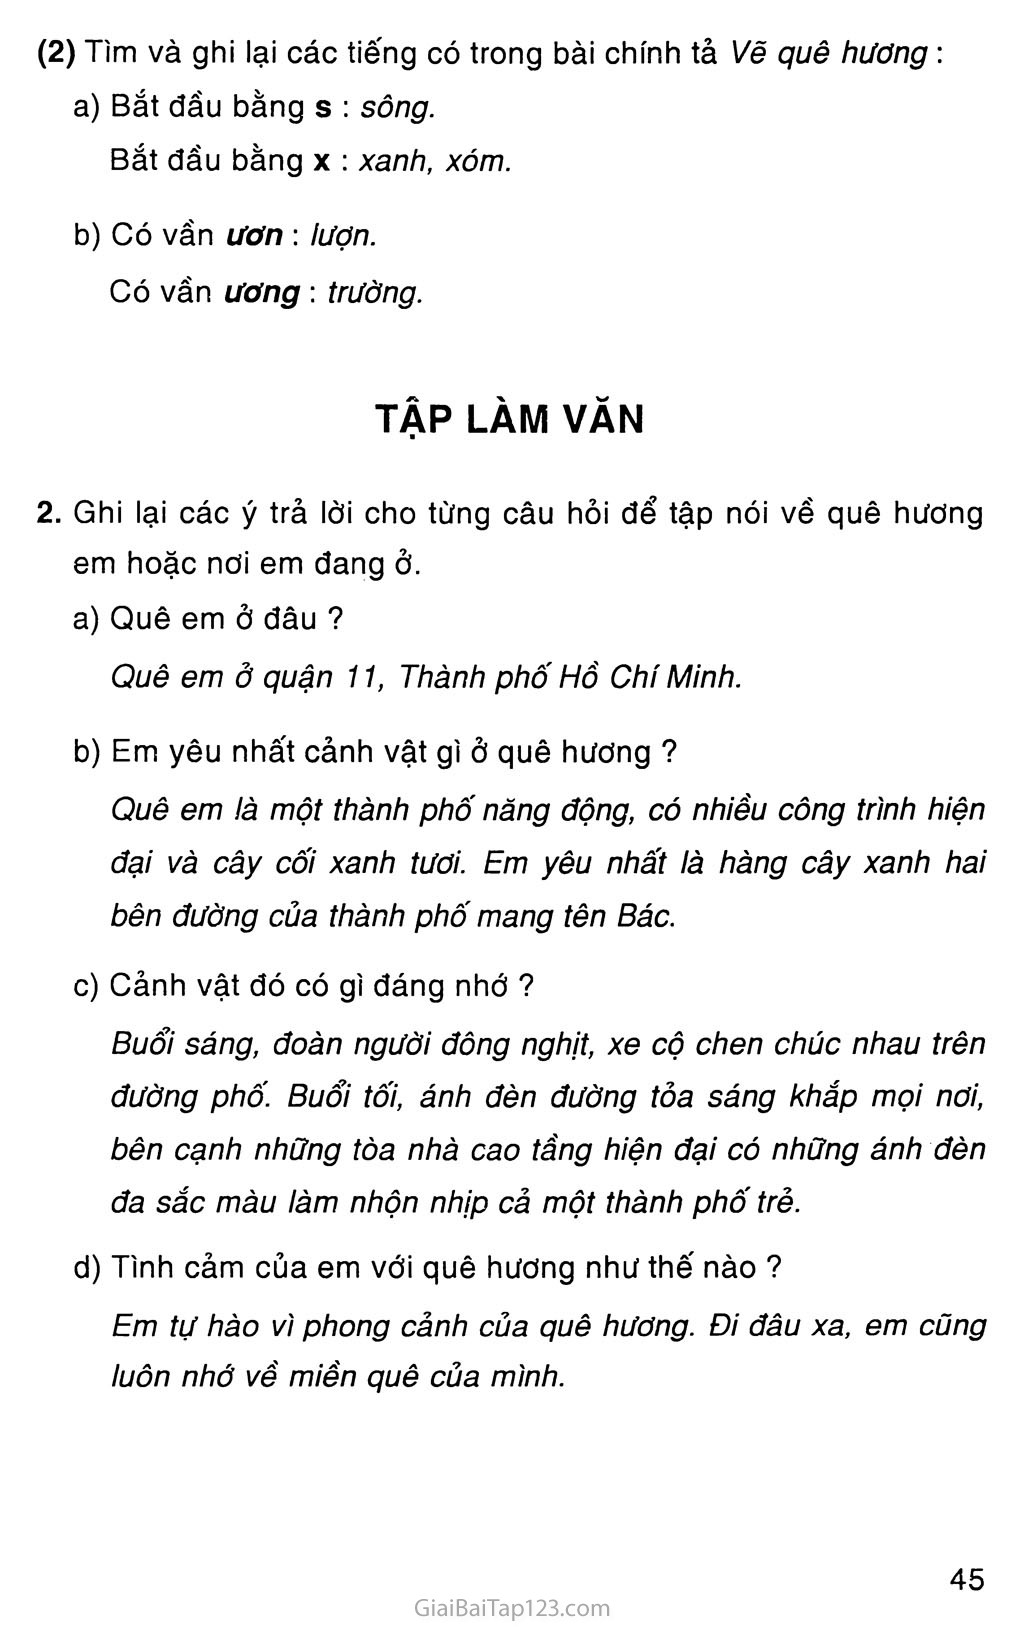 Tìm hiểu và rèn luyện Tiếng Việt bằng cách thực hiện các bài tập thú vị và học thêm về văn hóa và lịch sử Việt Nam. Xem hình ảnh này để lấy động lực cho bài tập Tiếng Việt của bạn.